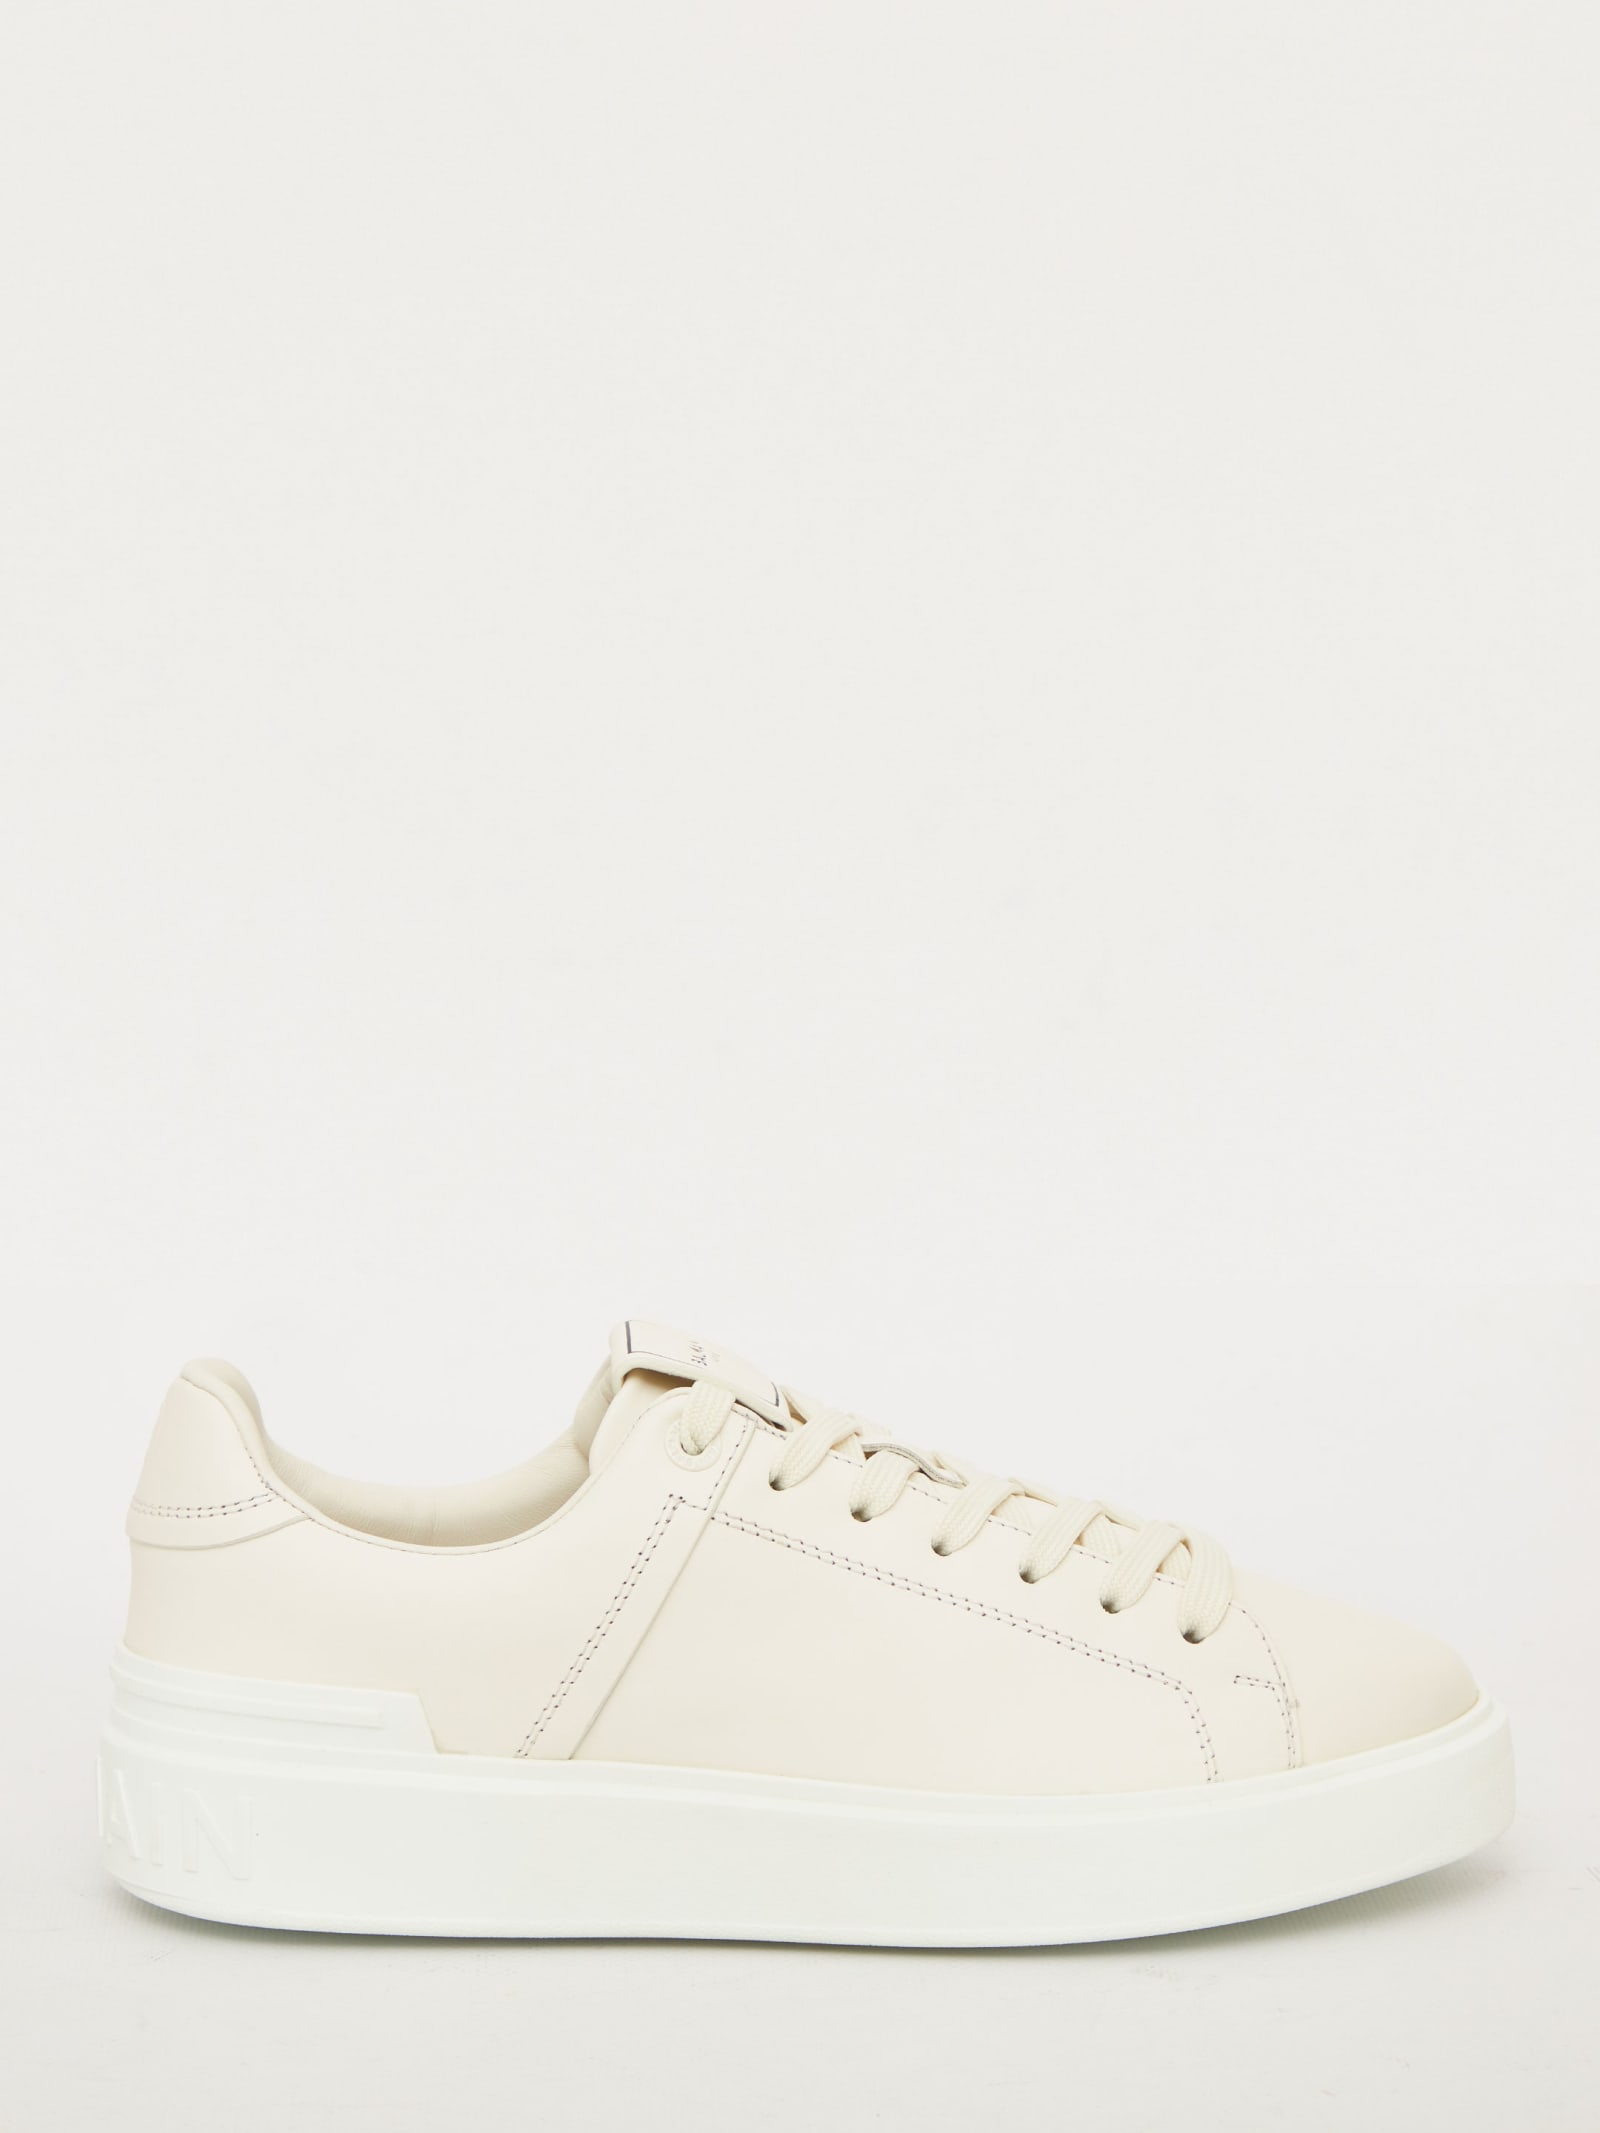 Balmain White Leather Sneakers